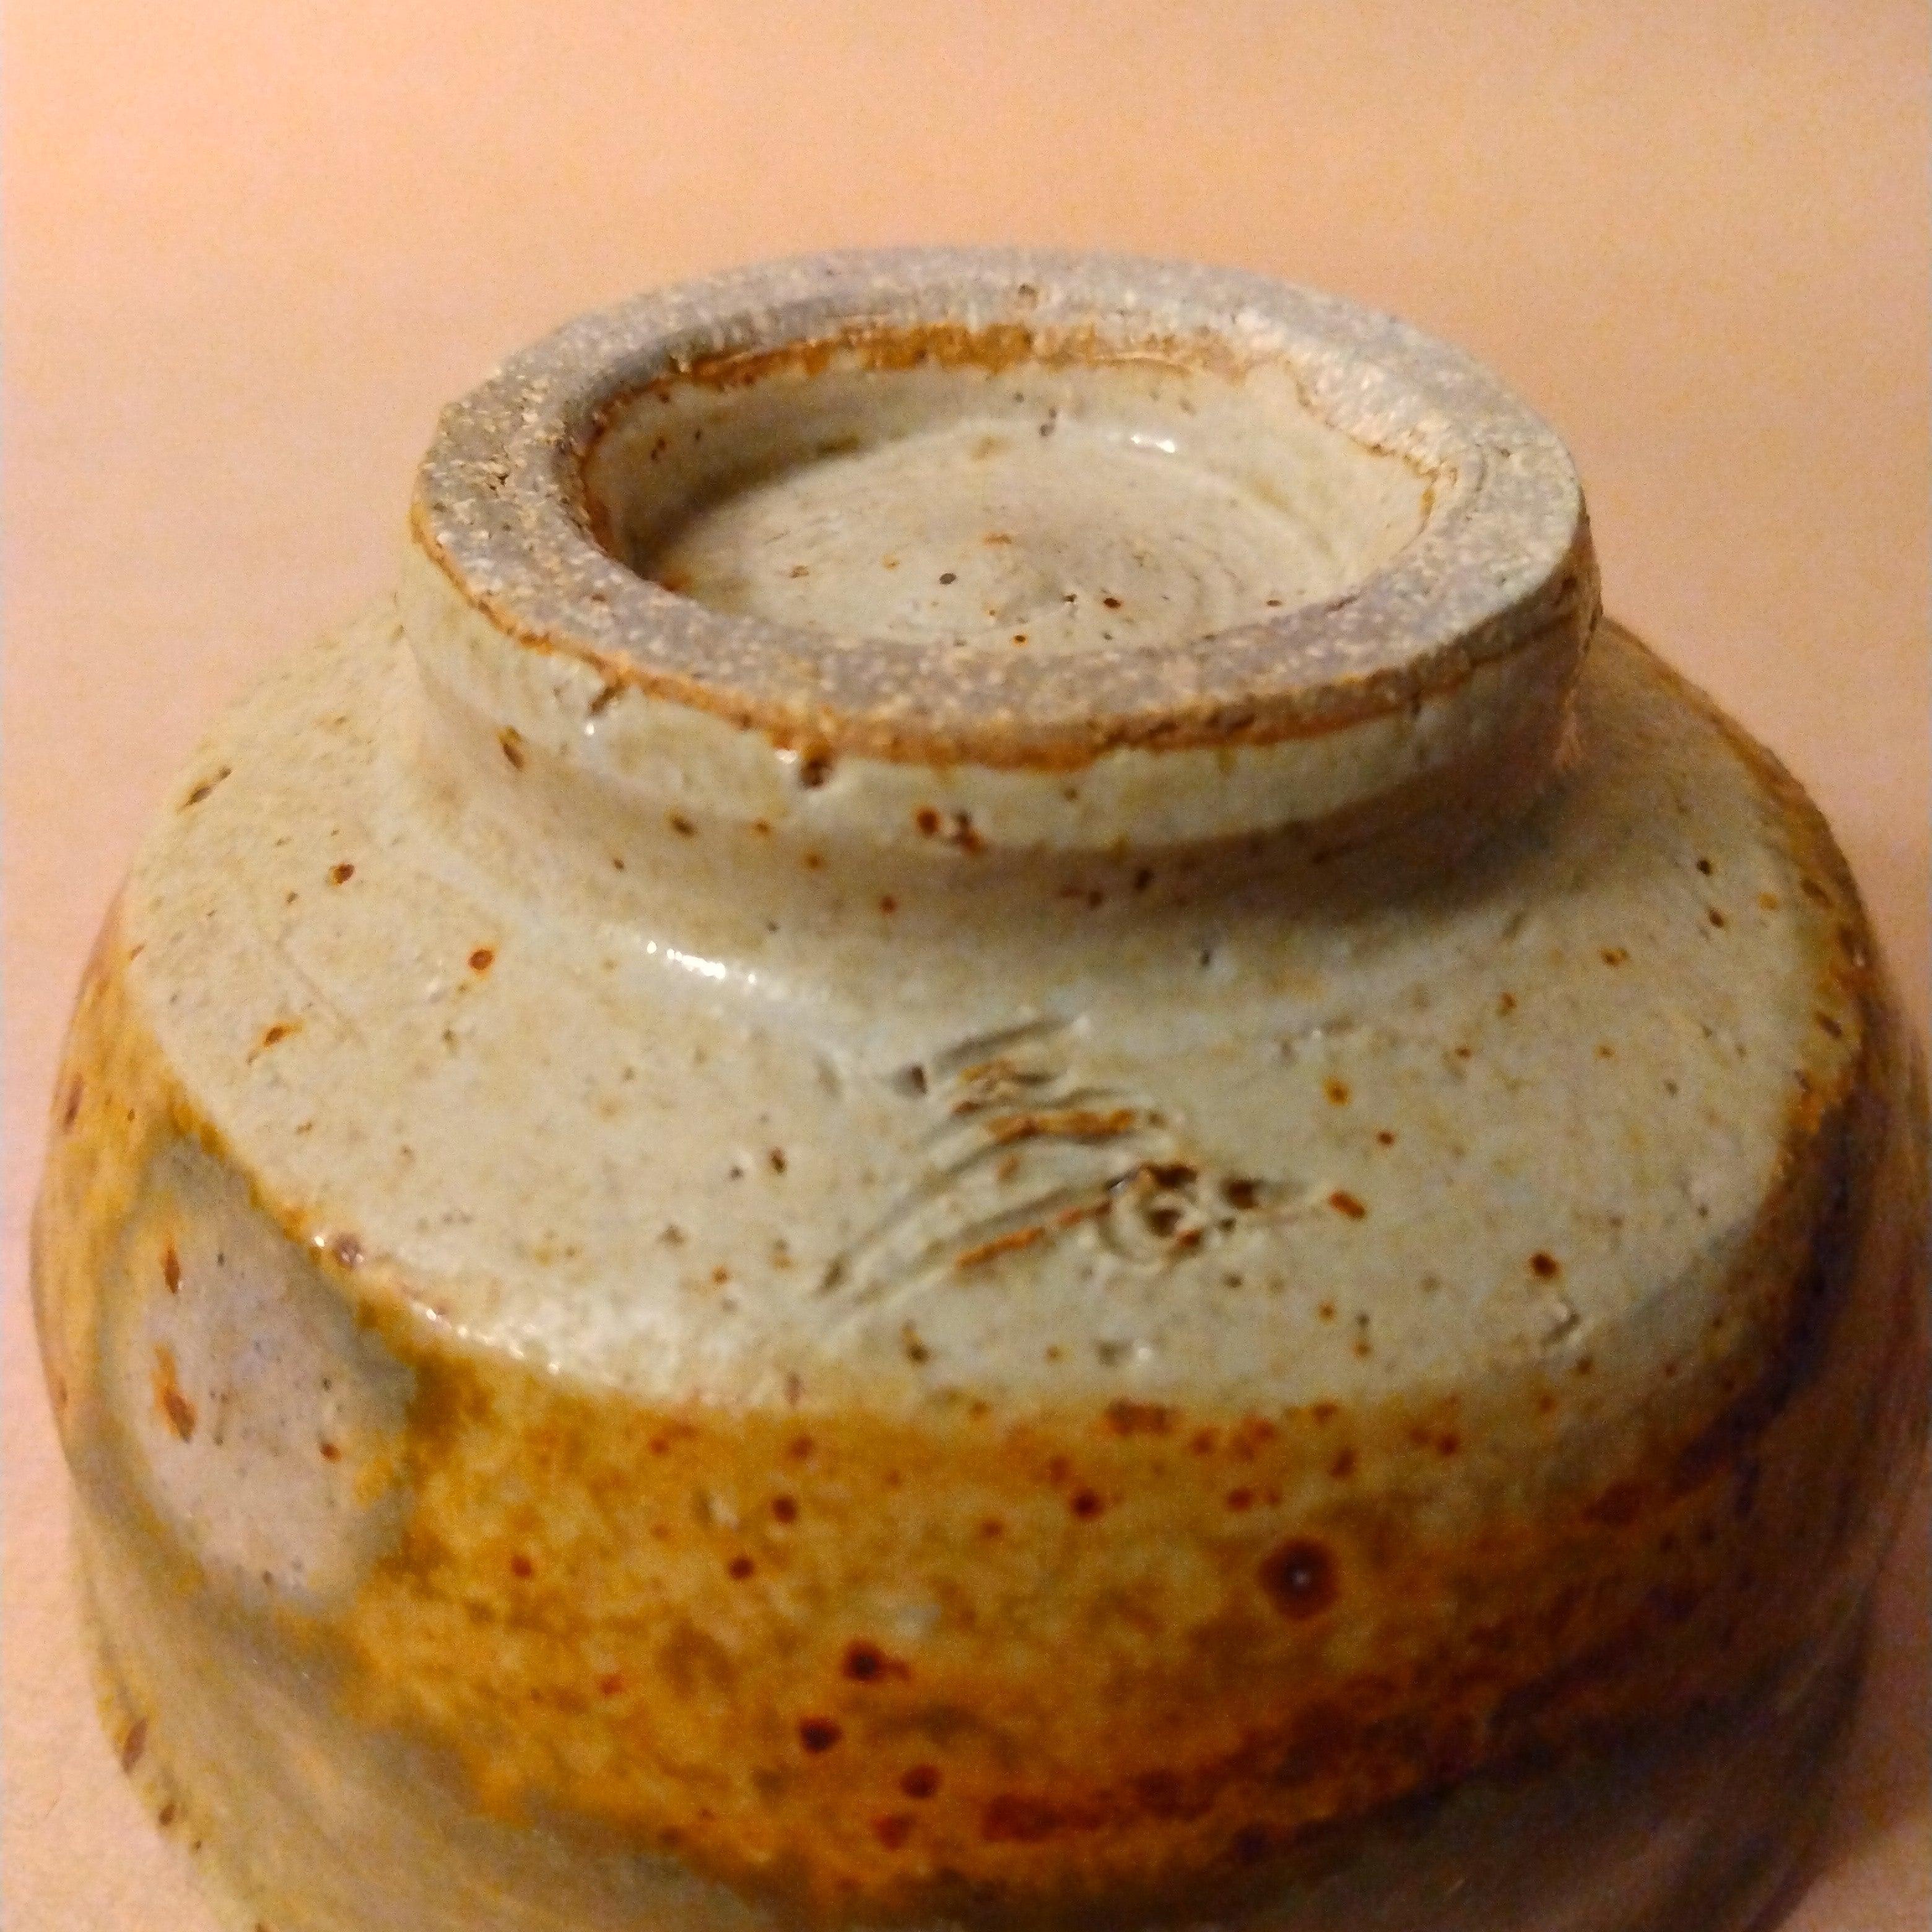 Guinomi, Sake Cup, by John Miller